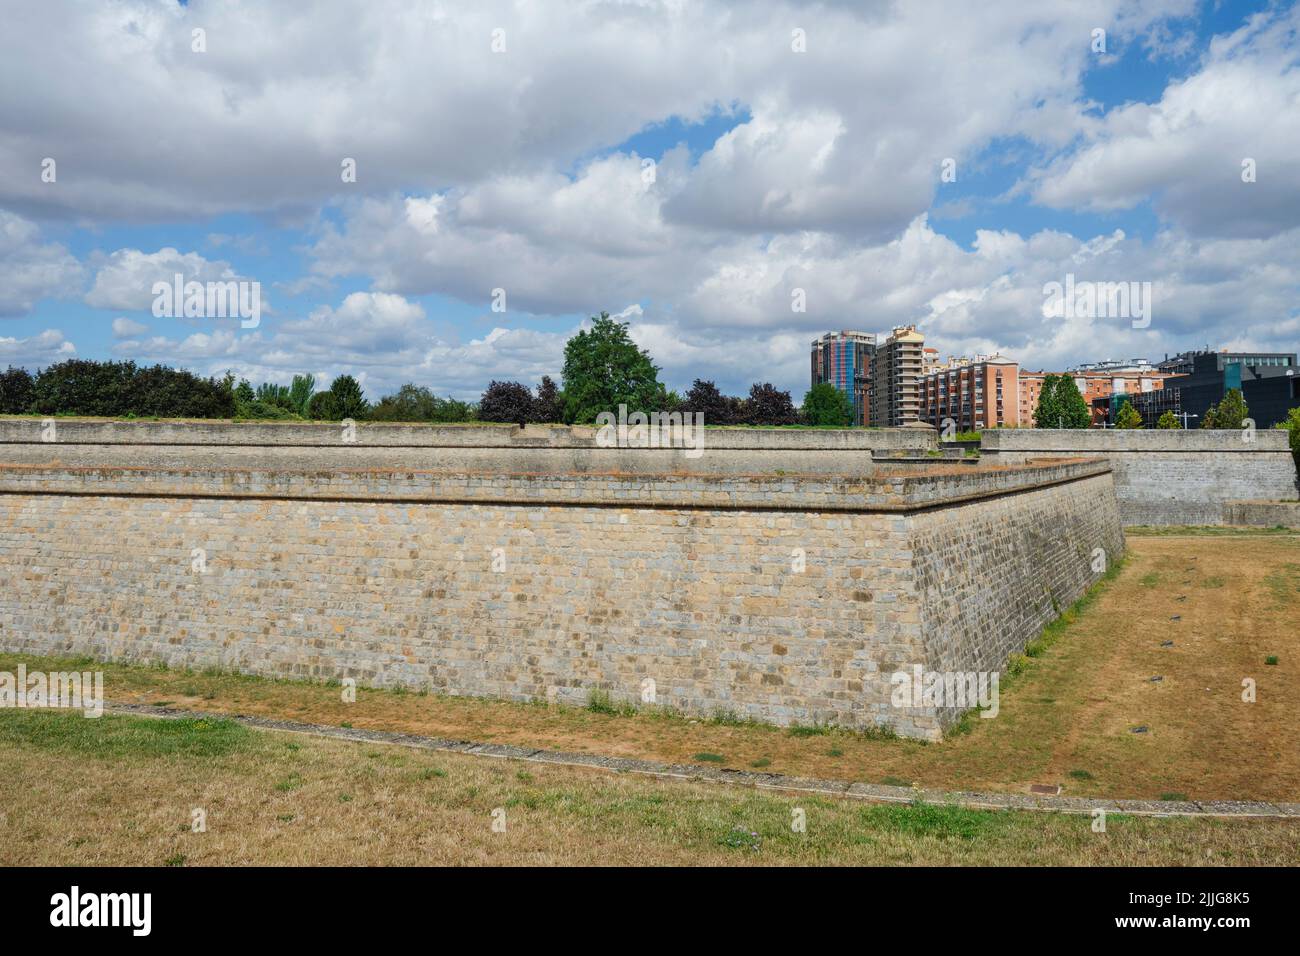 Vista del foso y las murallas de la Ciudadela de Pamplona, en Pamplona, en la Comunidad Autónoma de Navarra, España, en un día de verano Foto de stock